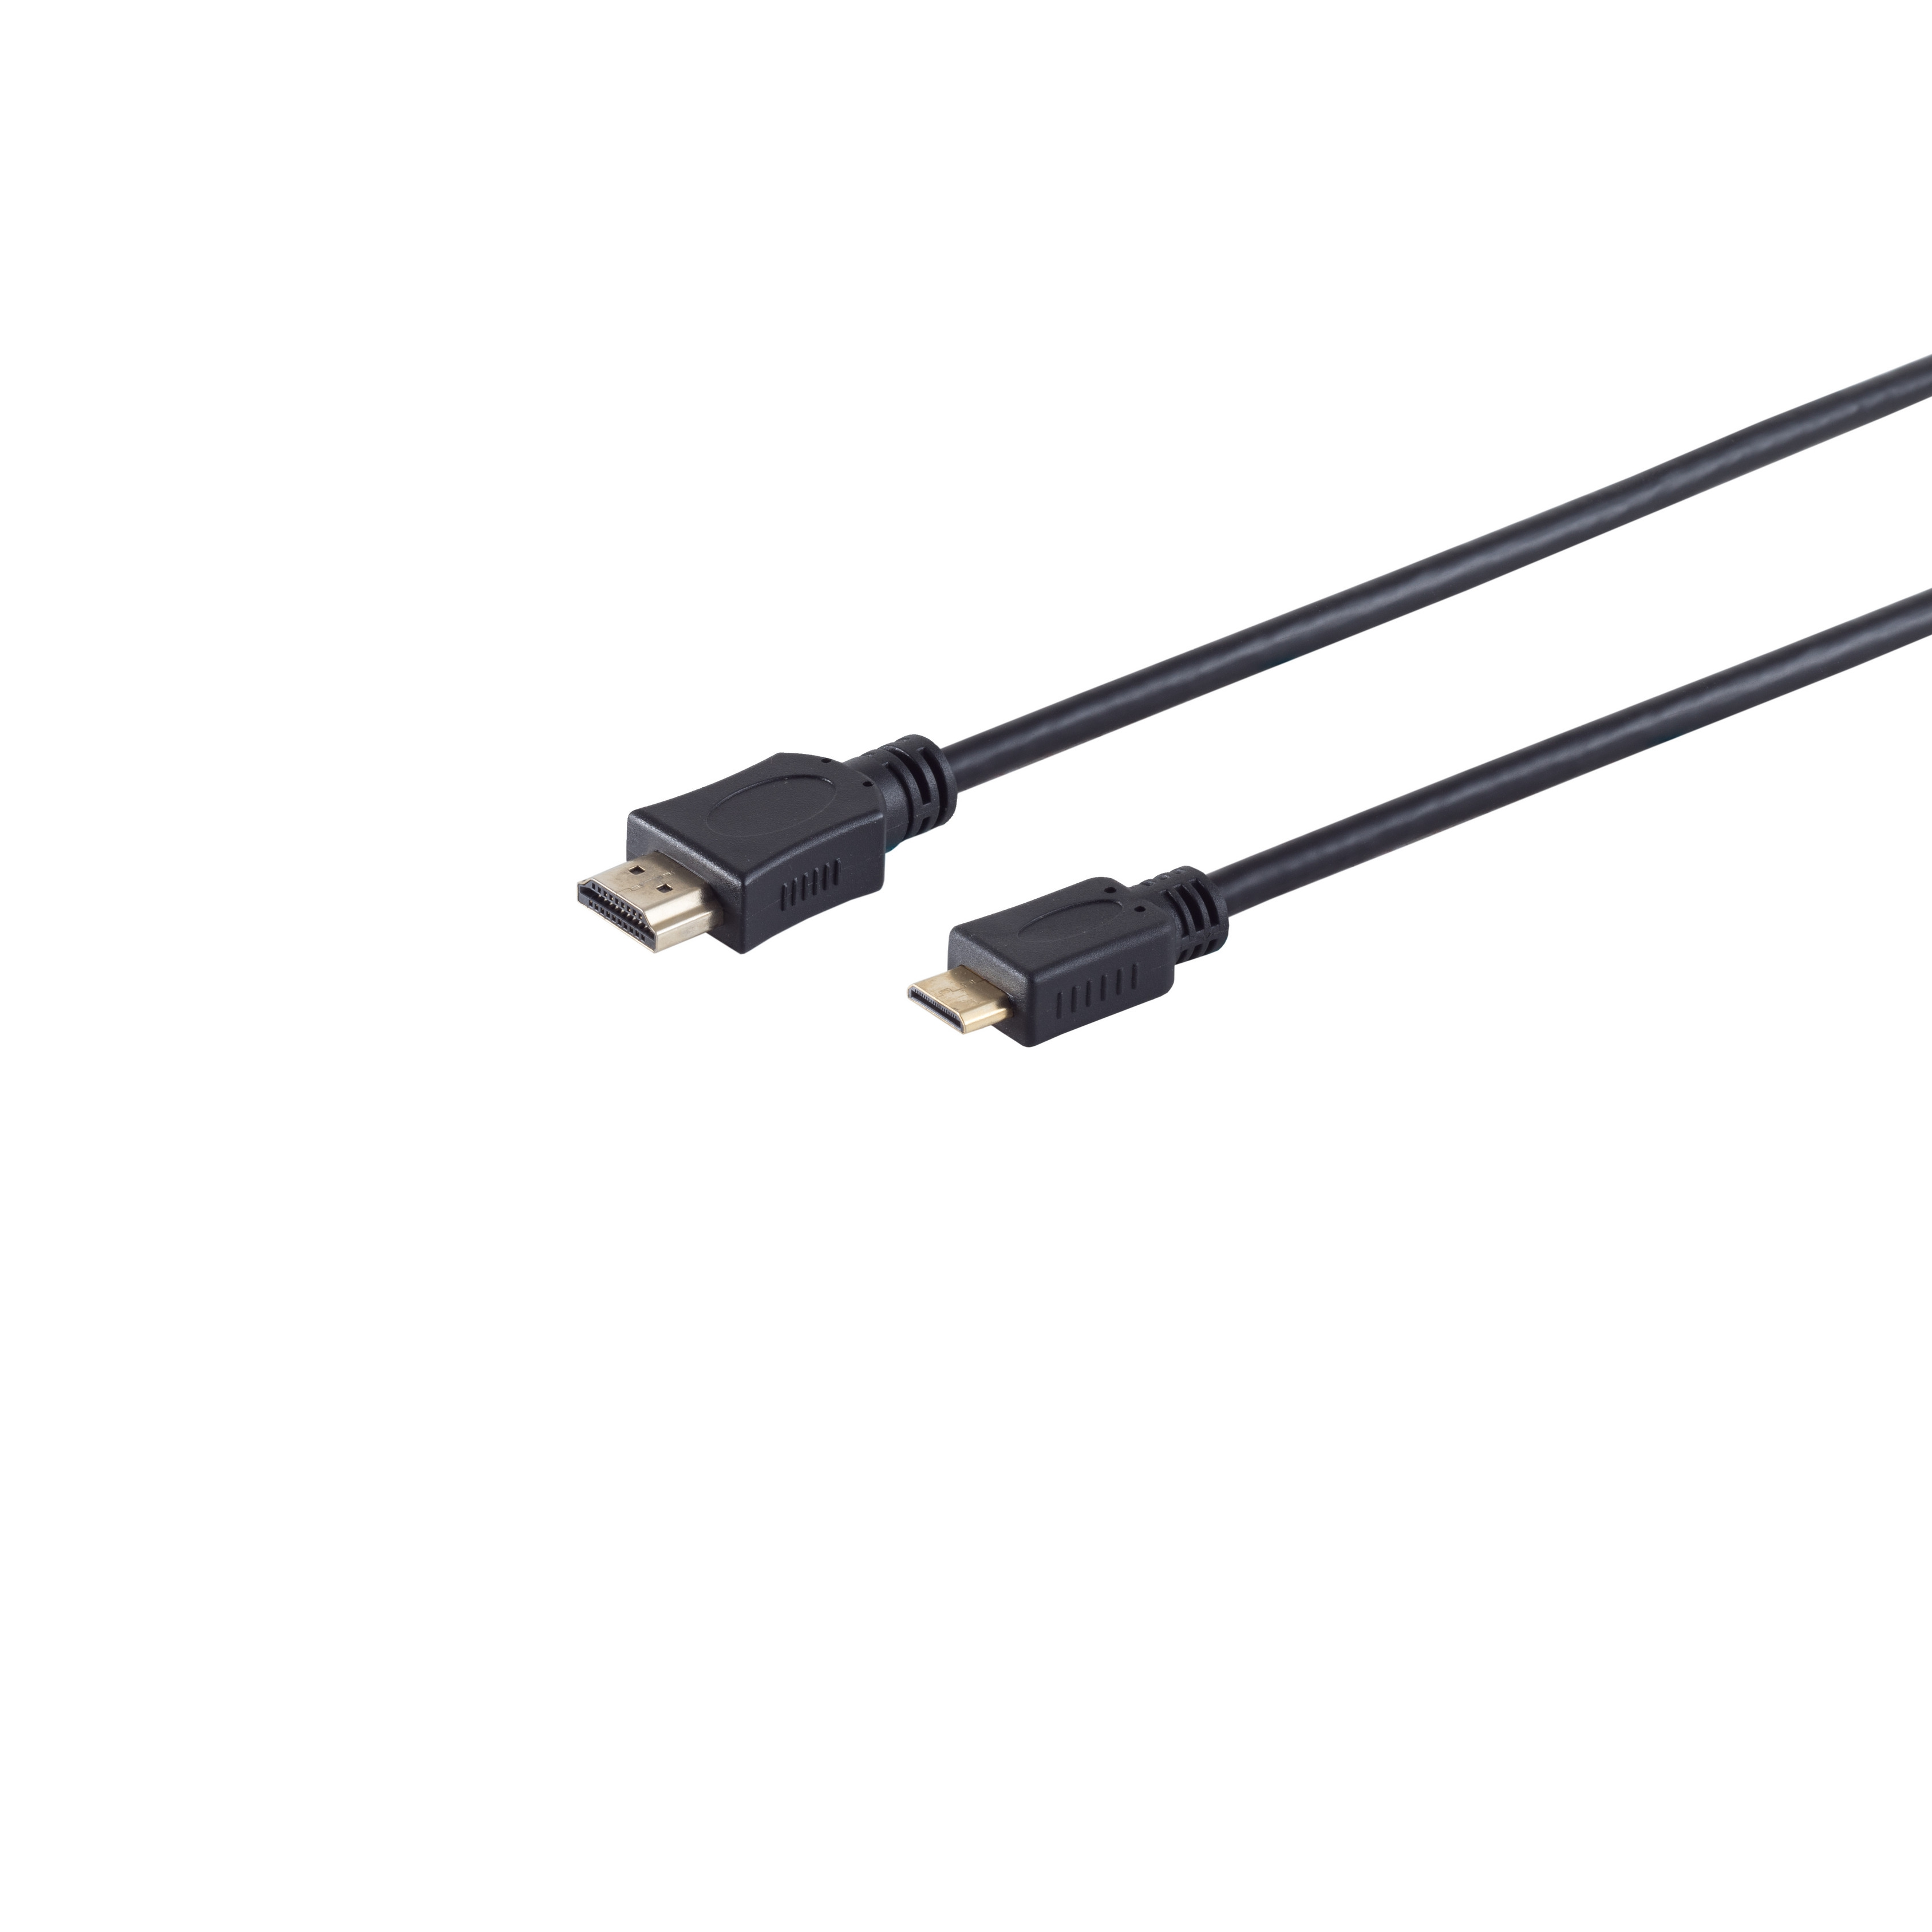 S/CONN CONNECTIVITY HEAC MAXIMUM A-Stecker verg. HDMI / Kabel 5m C-Stecker HDMI HDMI